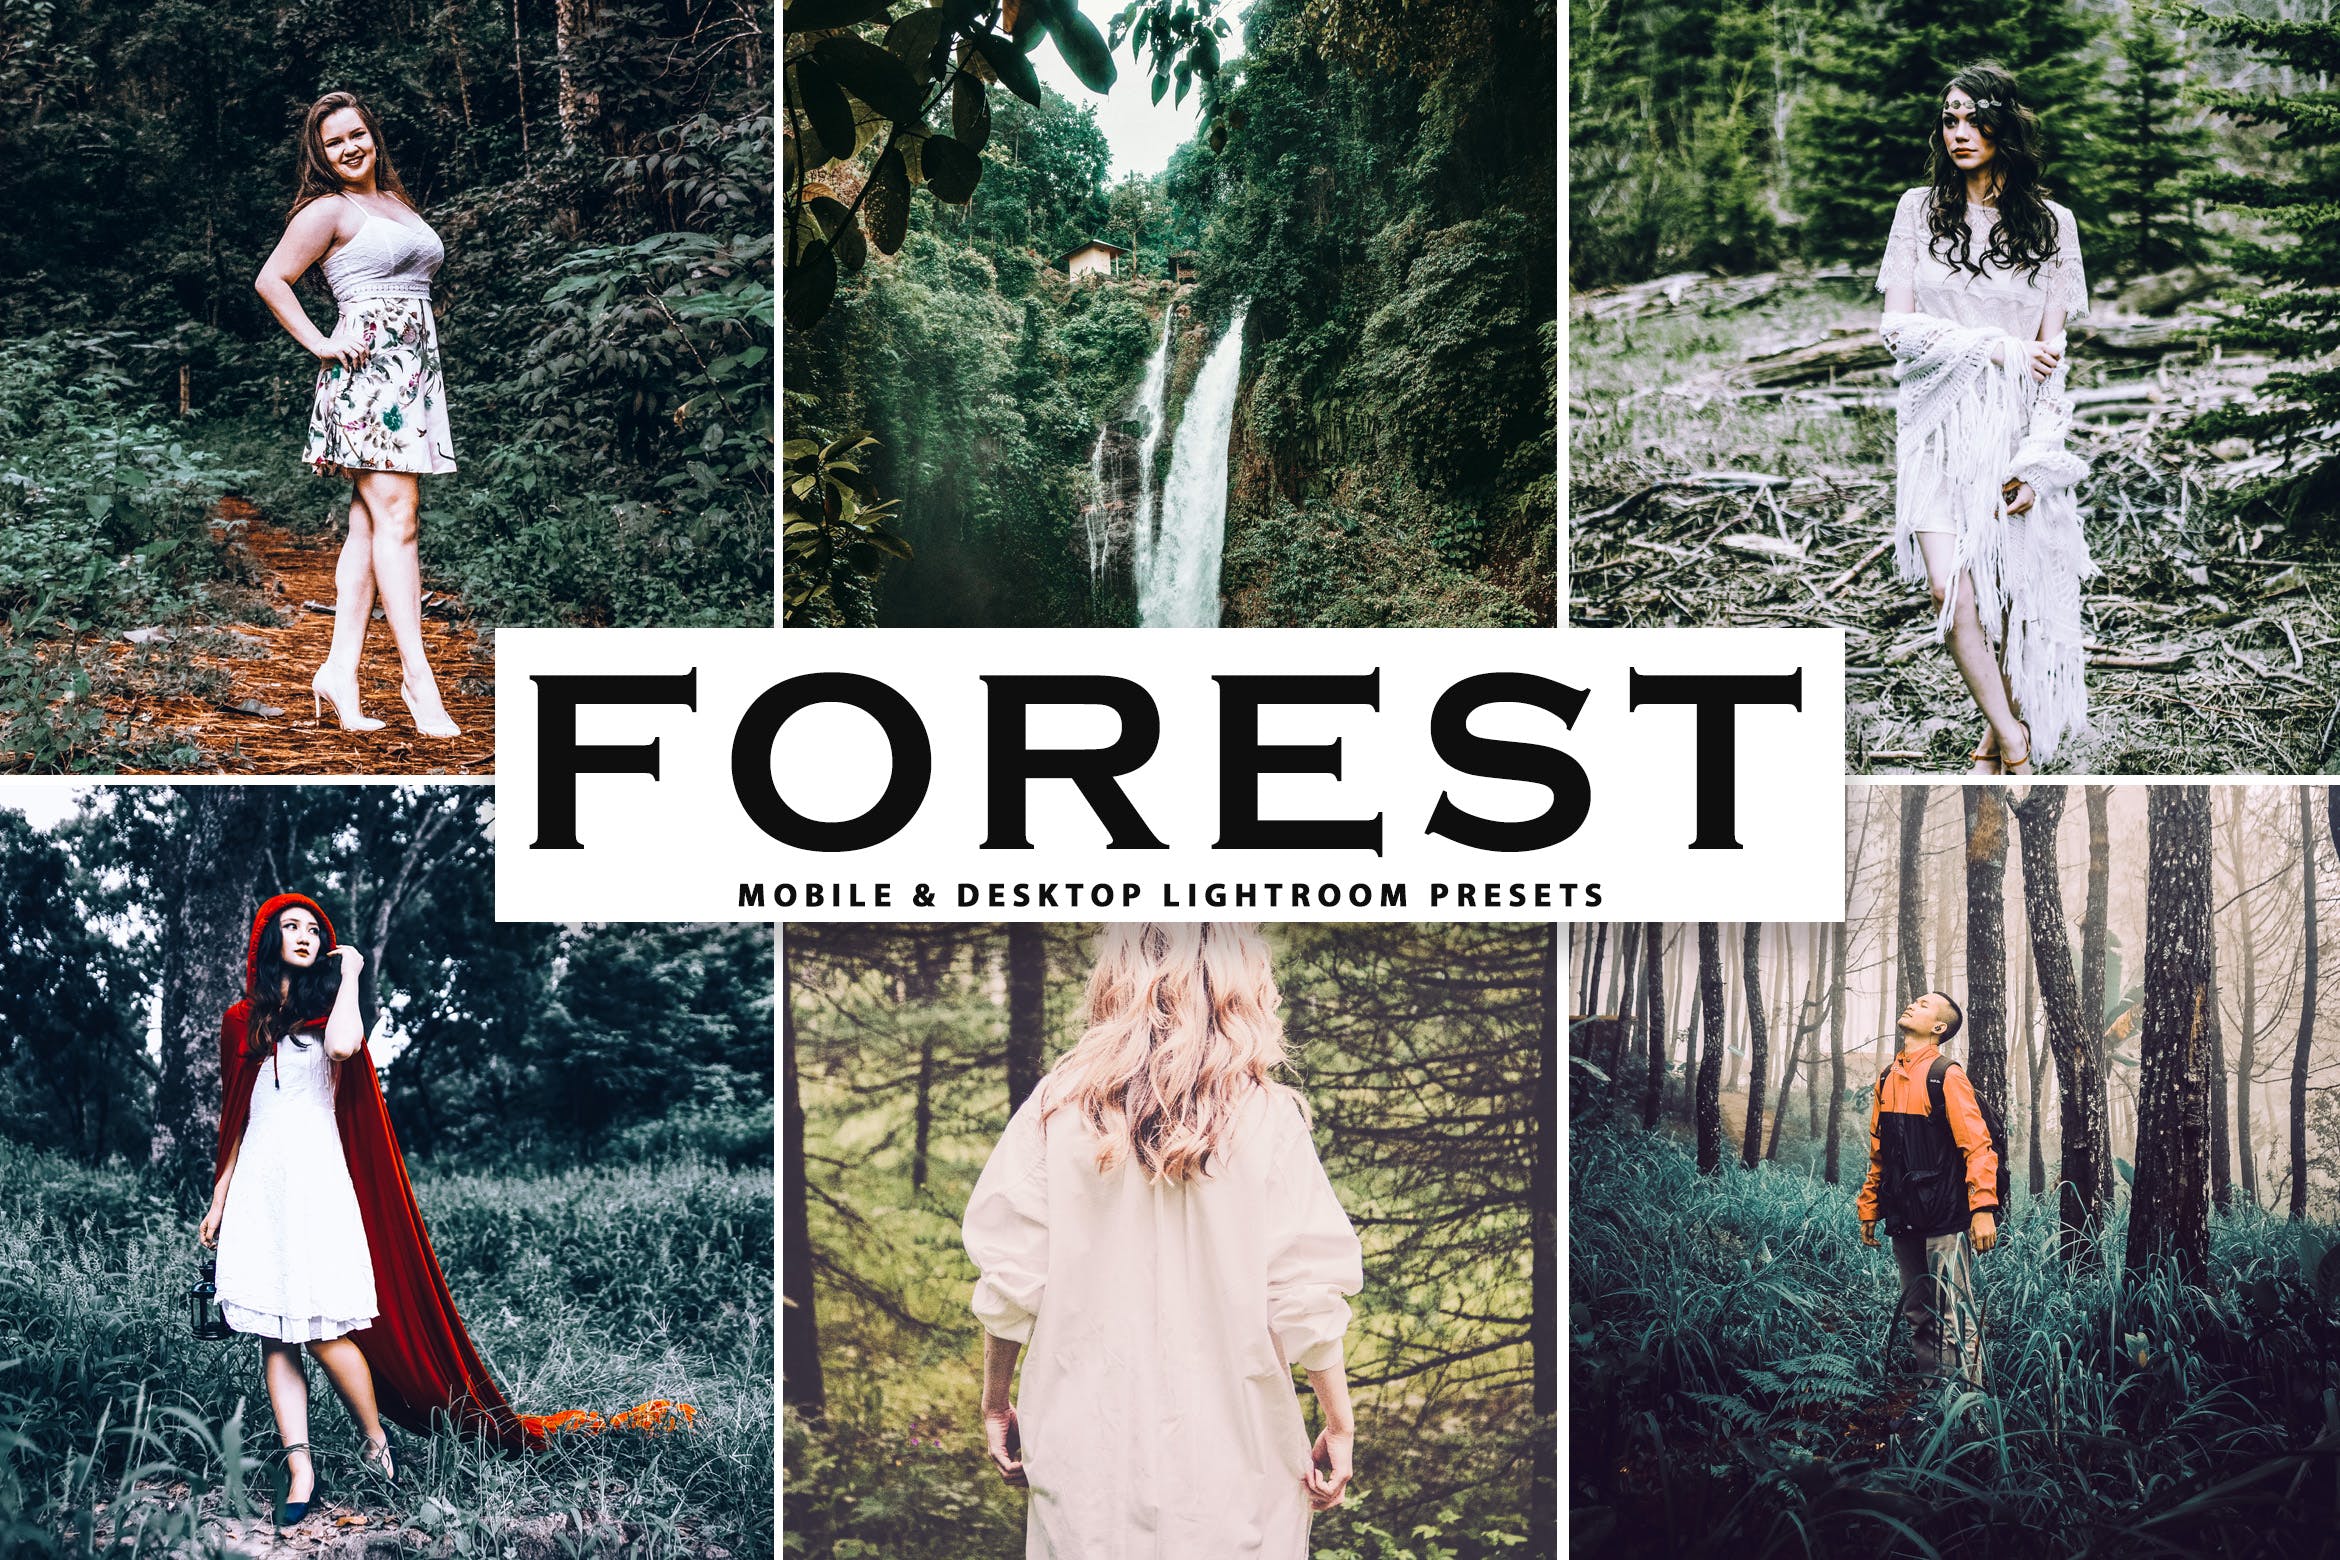 森林背景人像摄影后期处理调色滤镜LR预设 Forest Mobile & Desktop Lightroom Presets插图